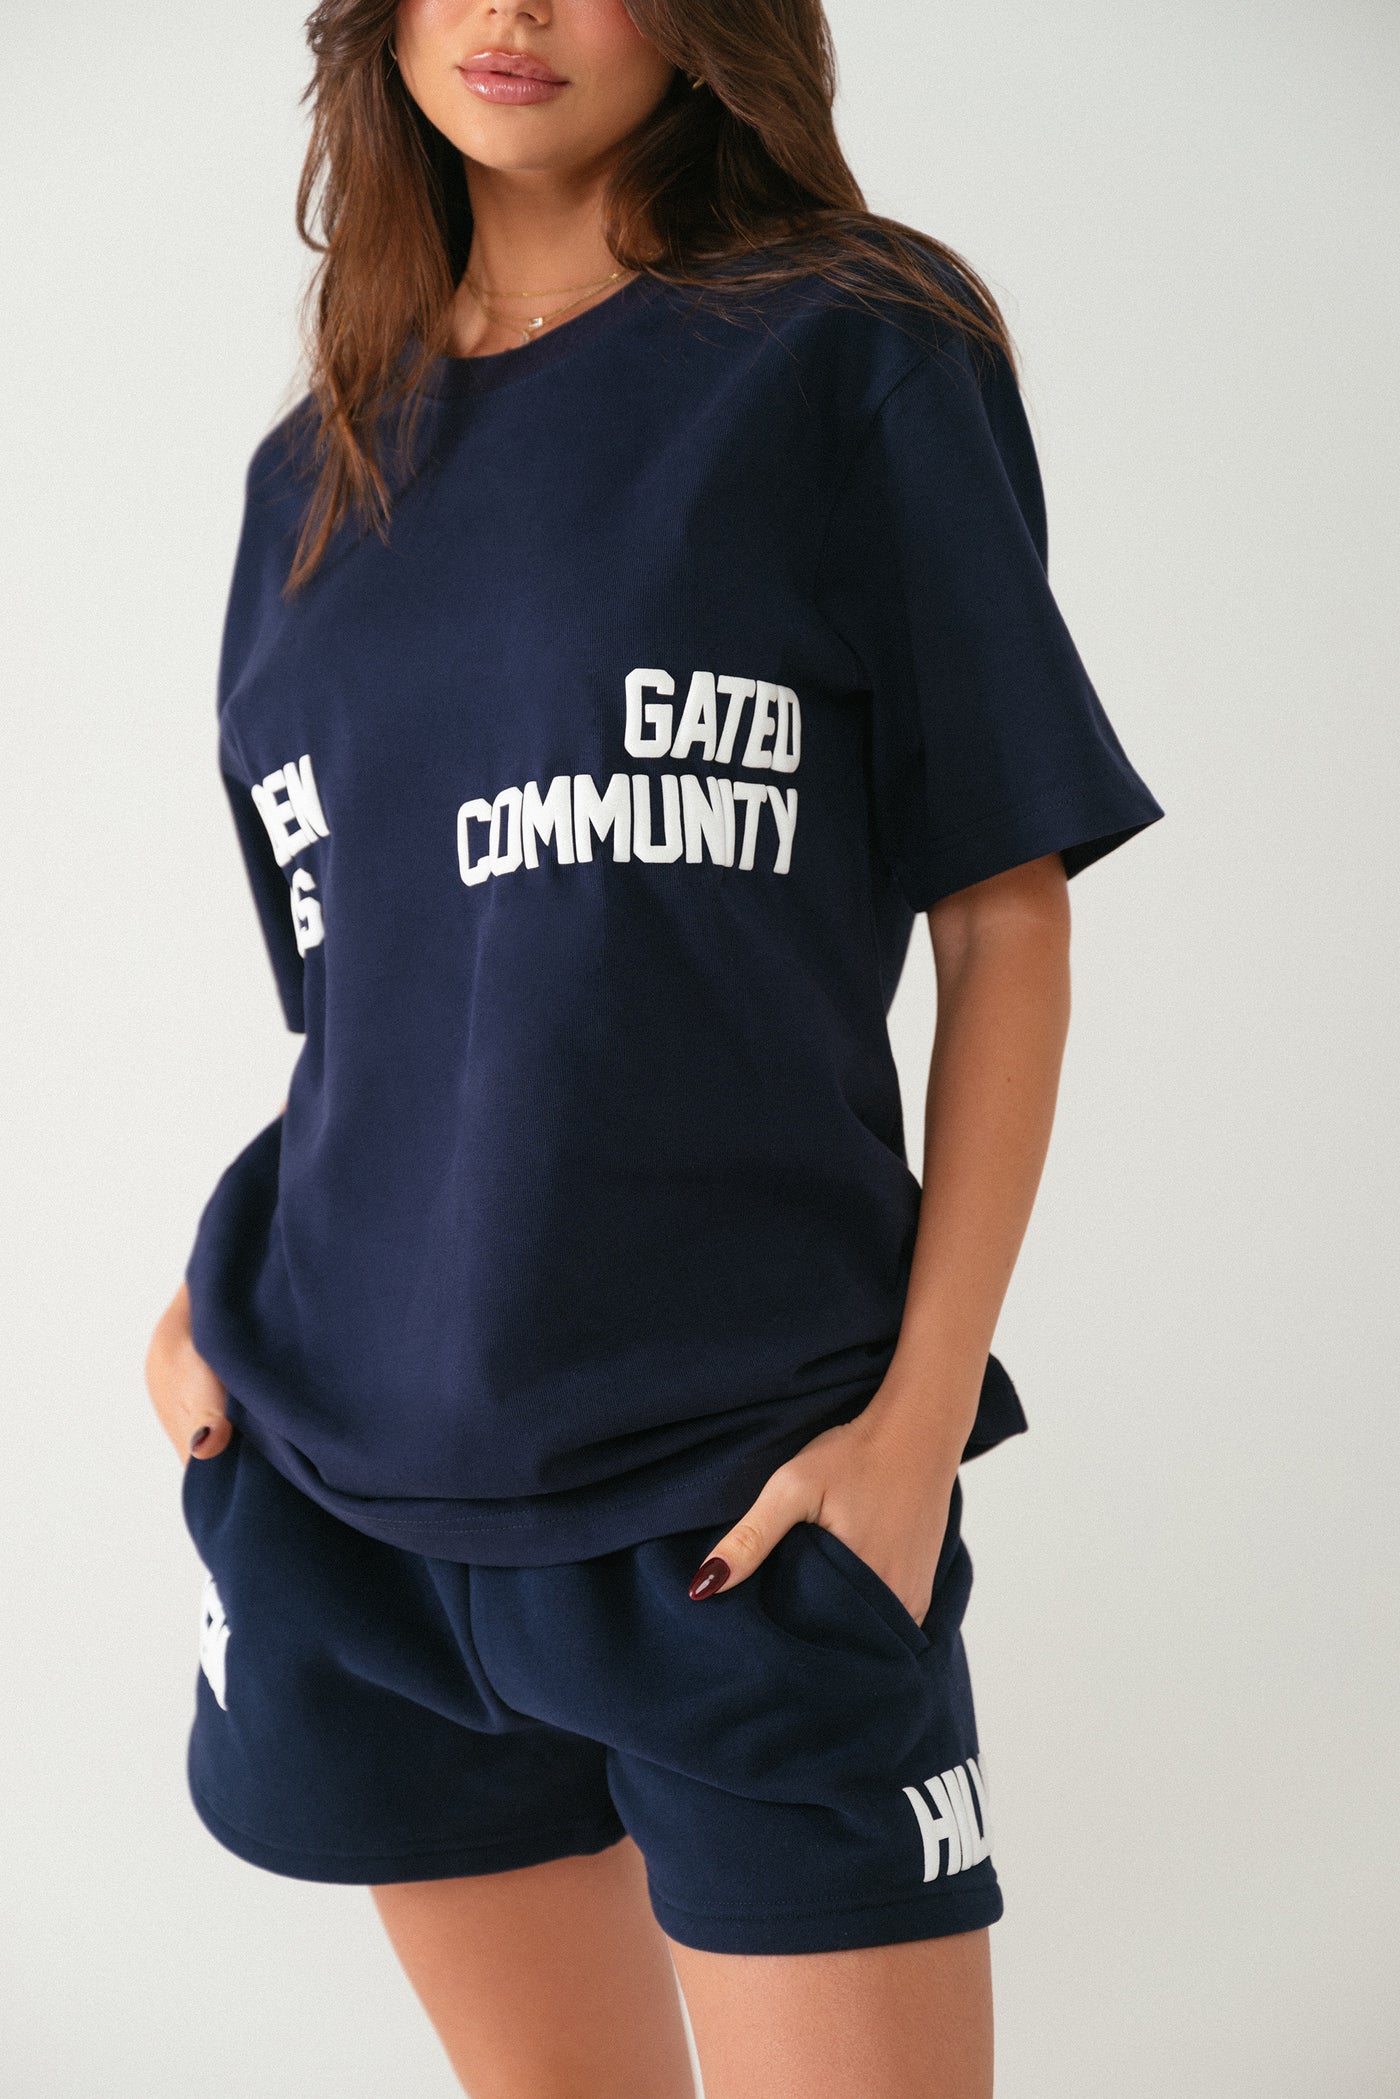 GATED COMMUNITY T-SHIRT NAVY